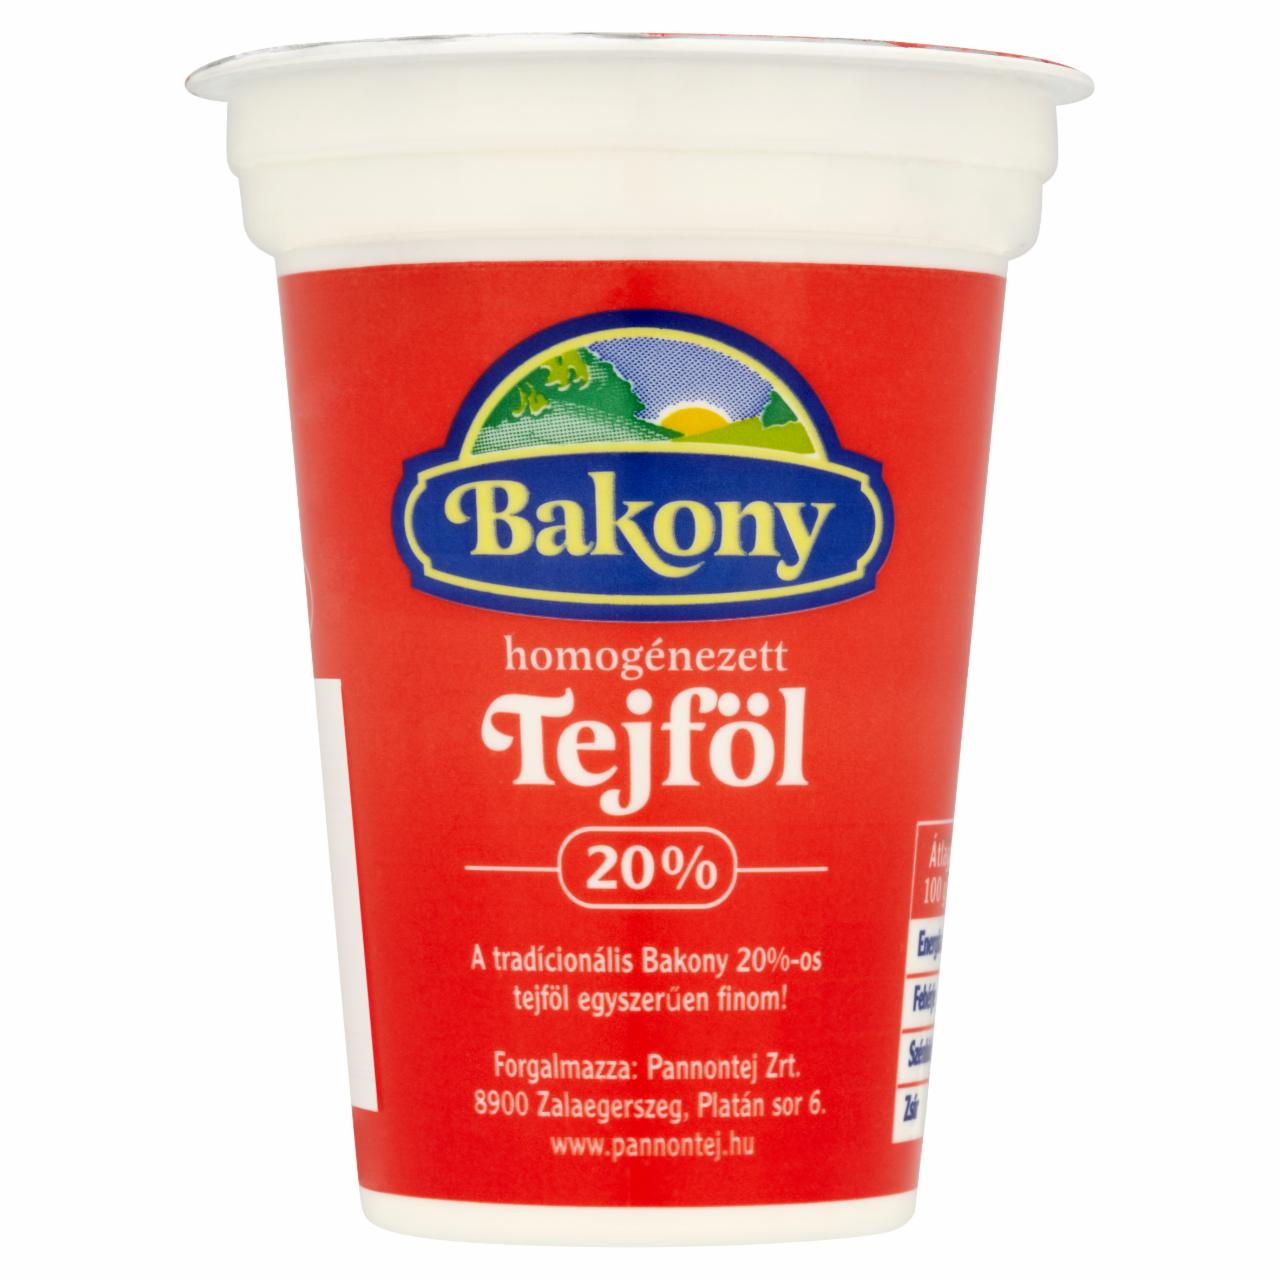 Képek - Bakony tejföl 20% 175 g